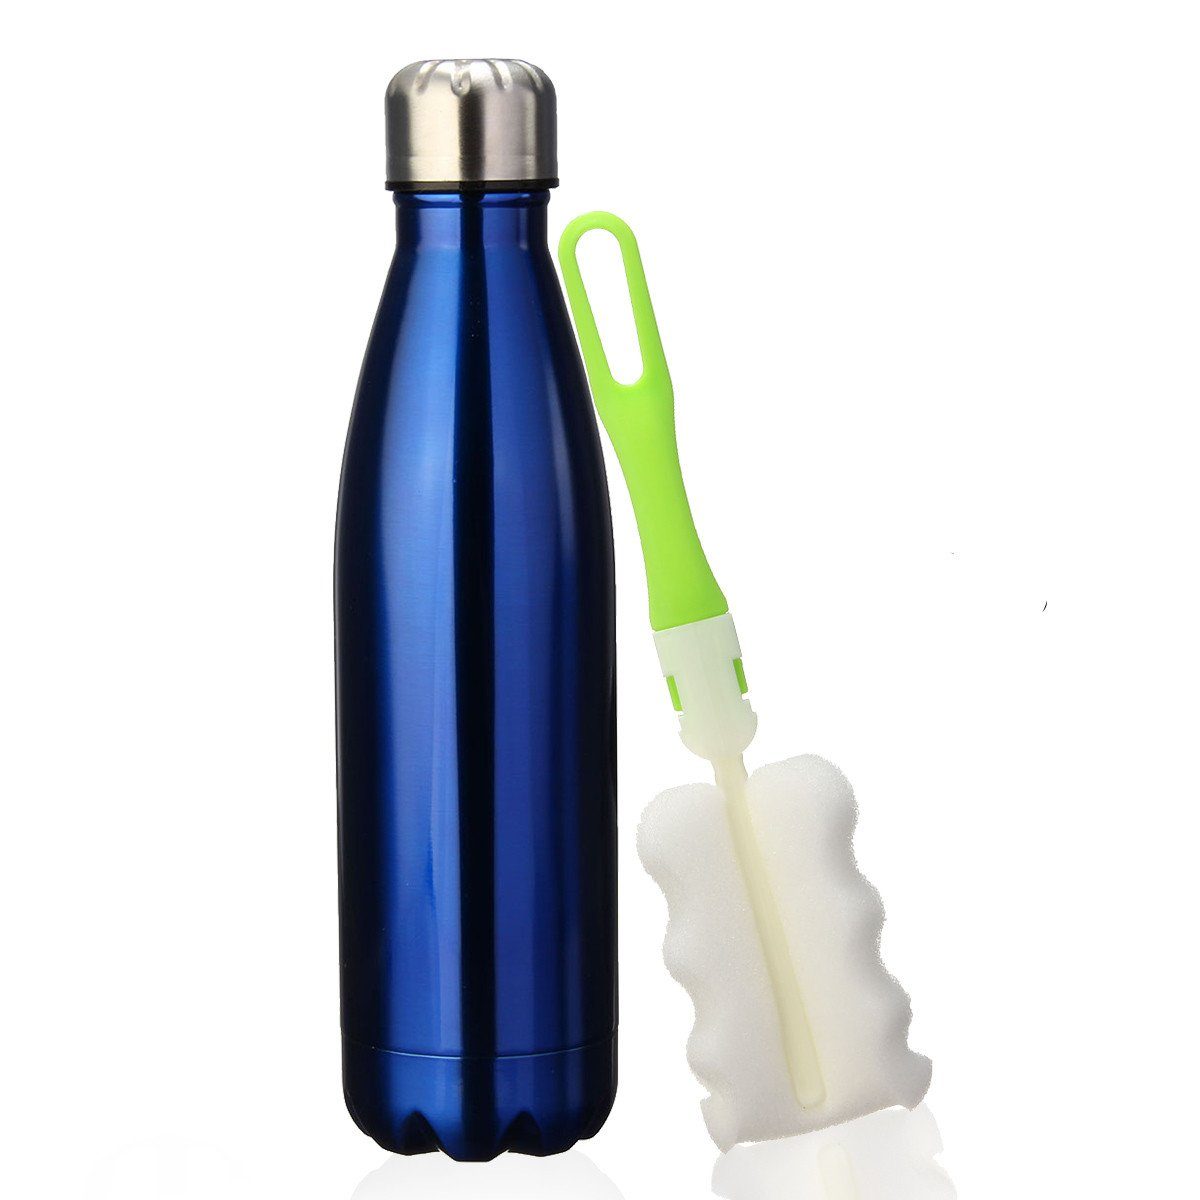 Insma Thermoflasche 500ml doppelwandige Isolierflasche Trinkflasche, mit auslaufsicherem Deckel und Bürste Dunkelblau